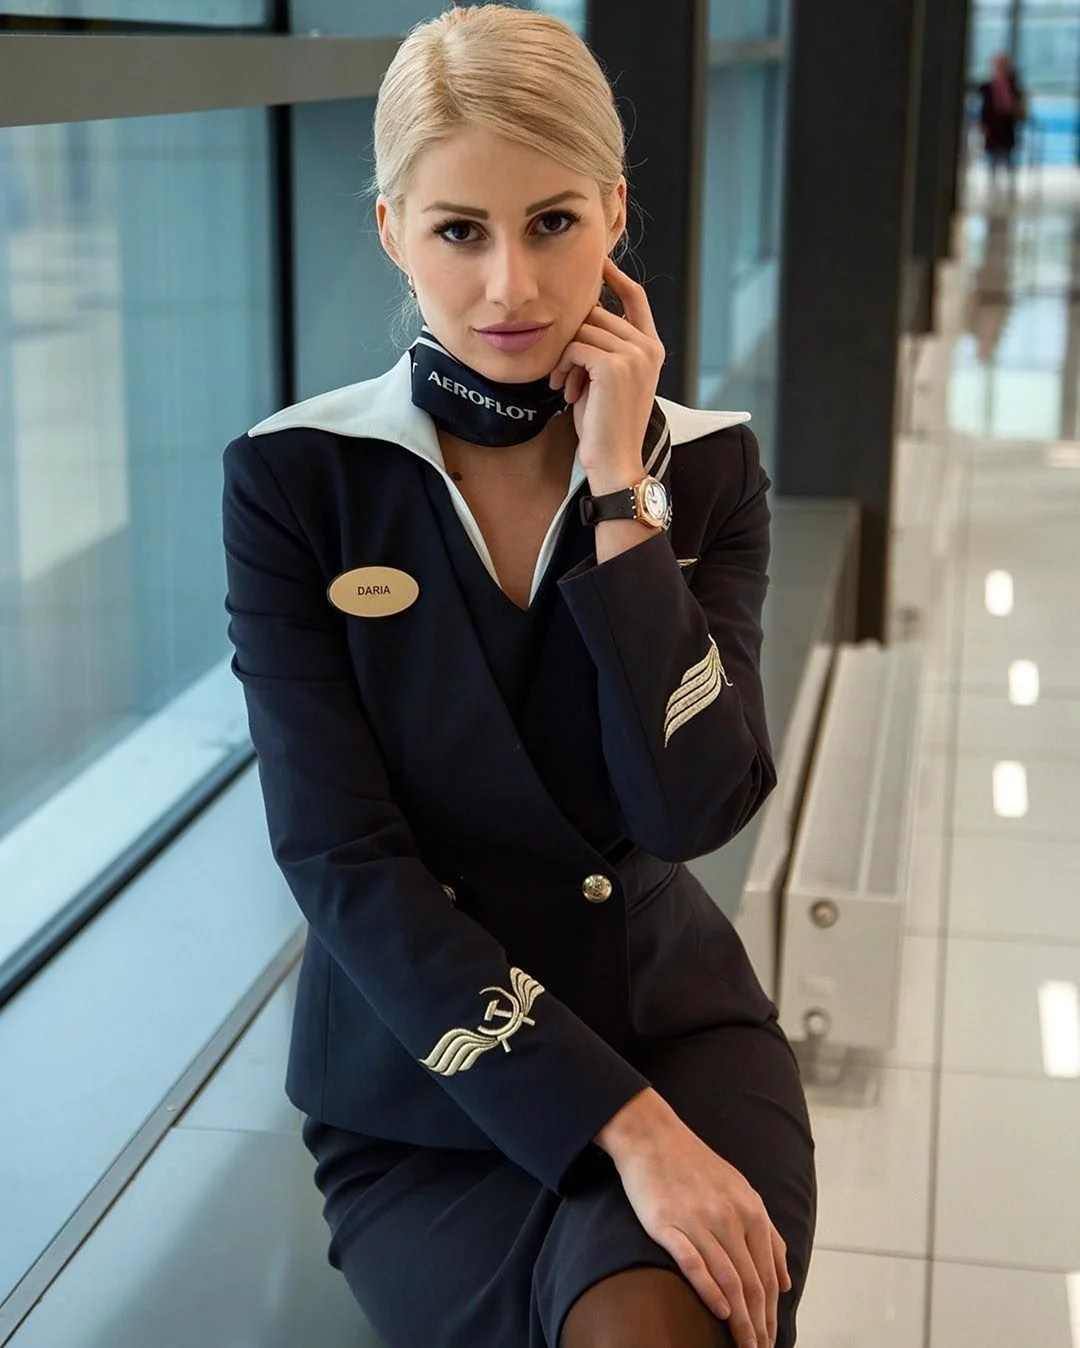 Даша Орлова стюардесса. Красивая девушка